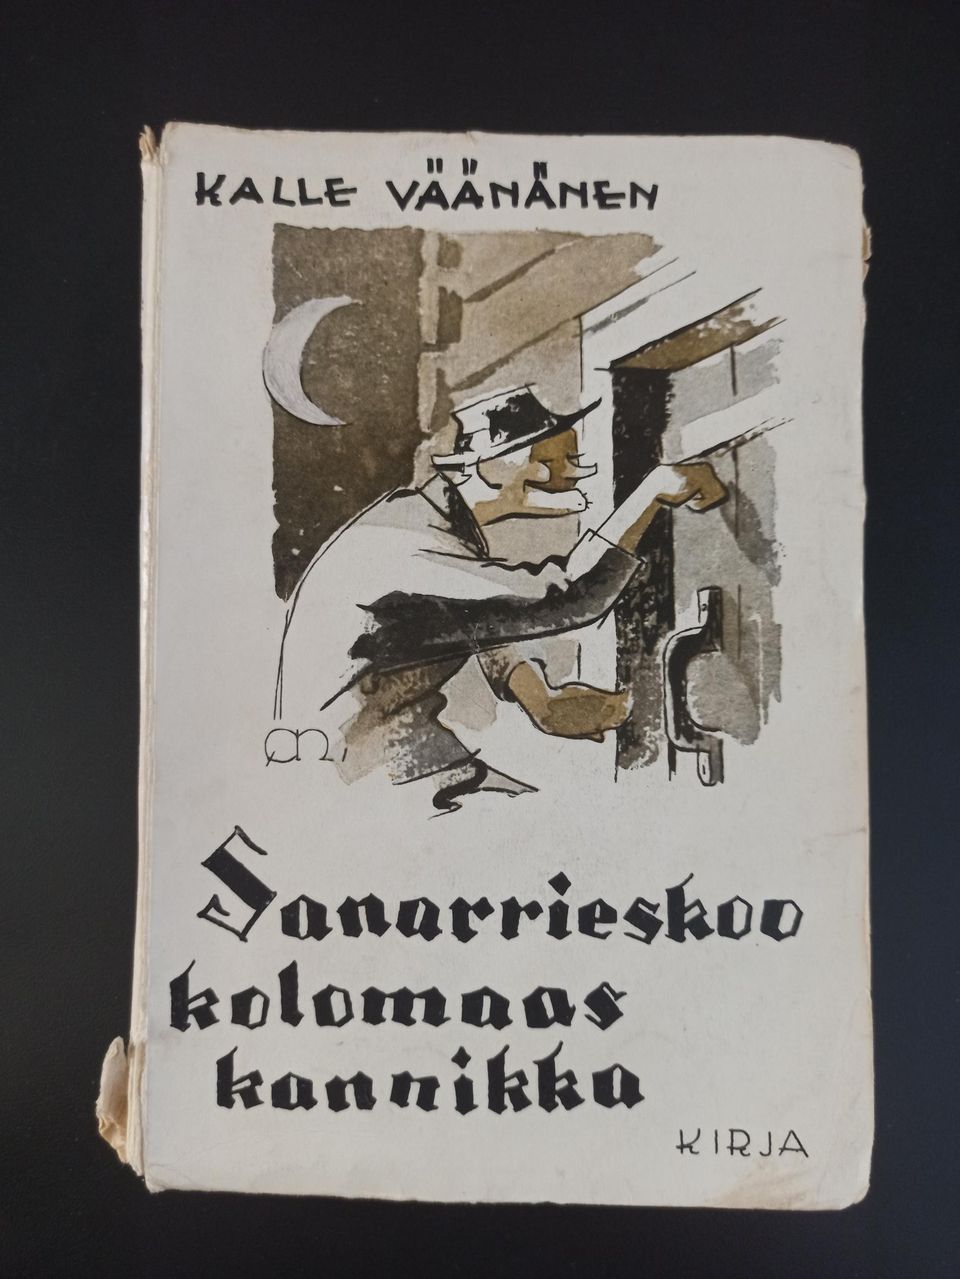 Sanarrieskoo kolomaas kannikka, Väänänen Kalle, v. 1930